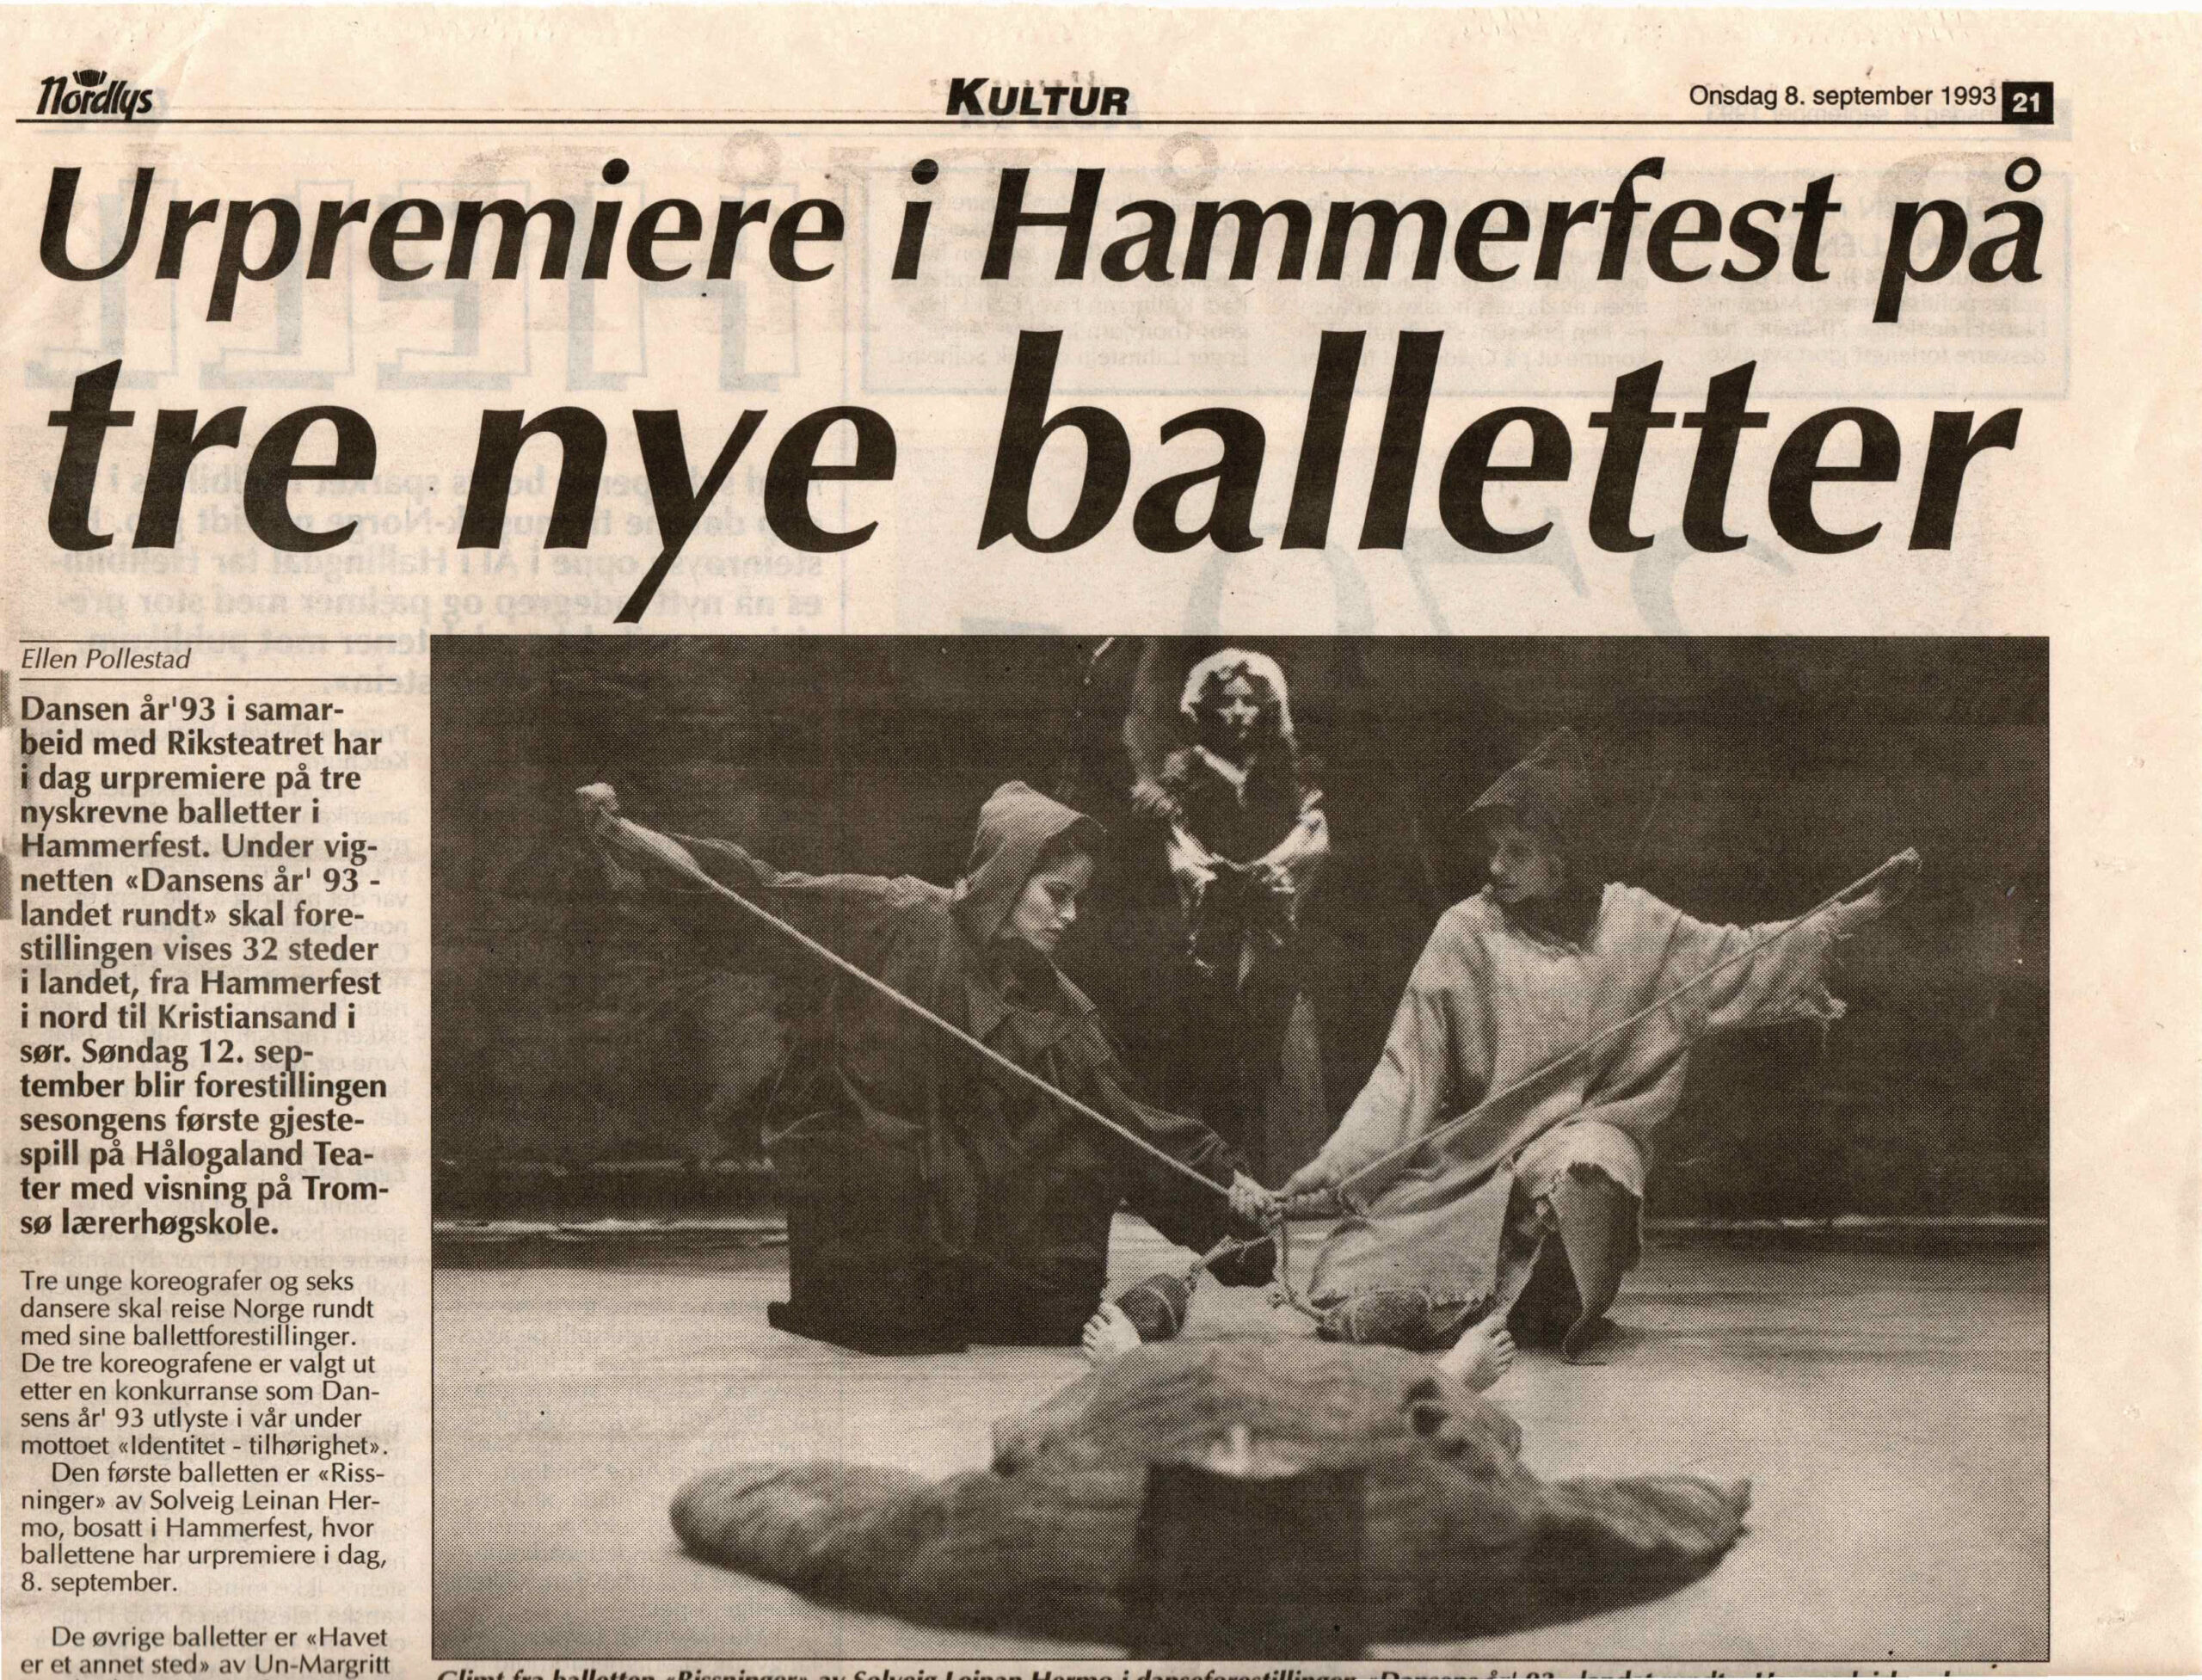 Dansens År '93